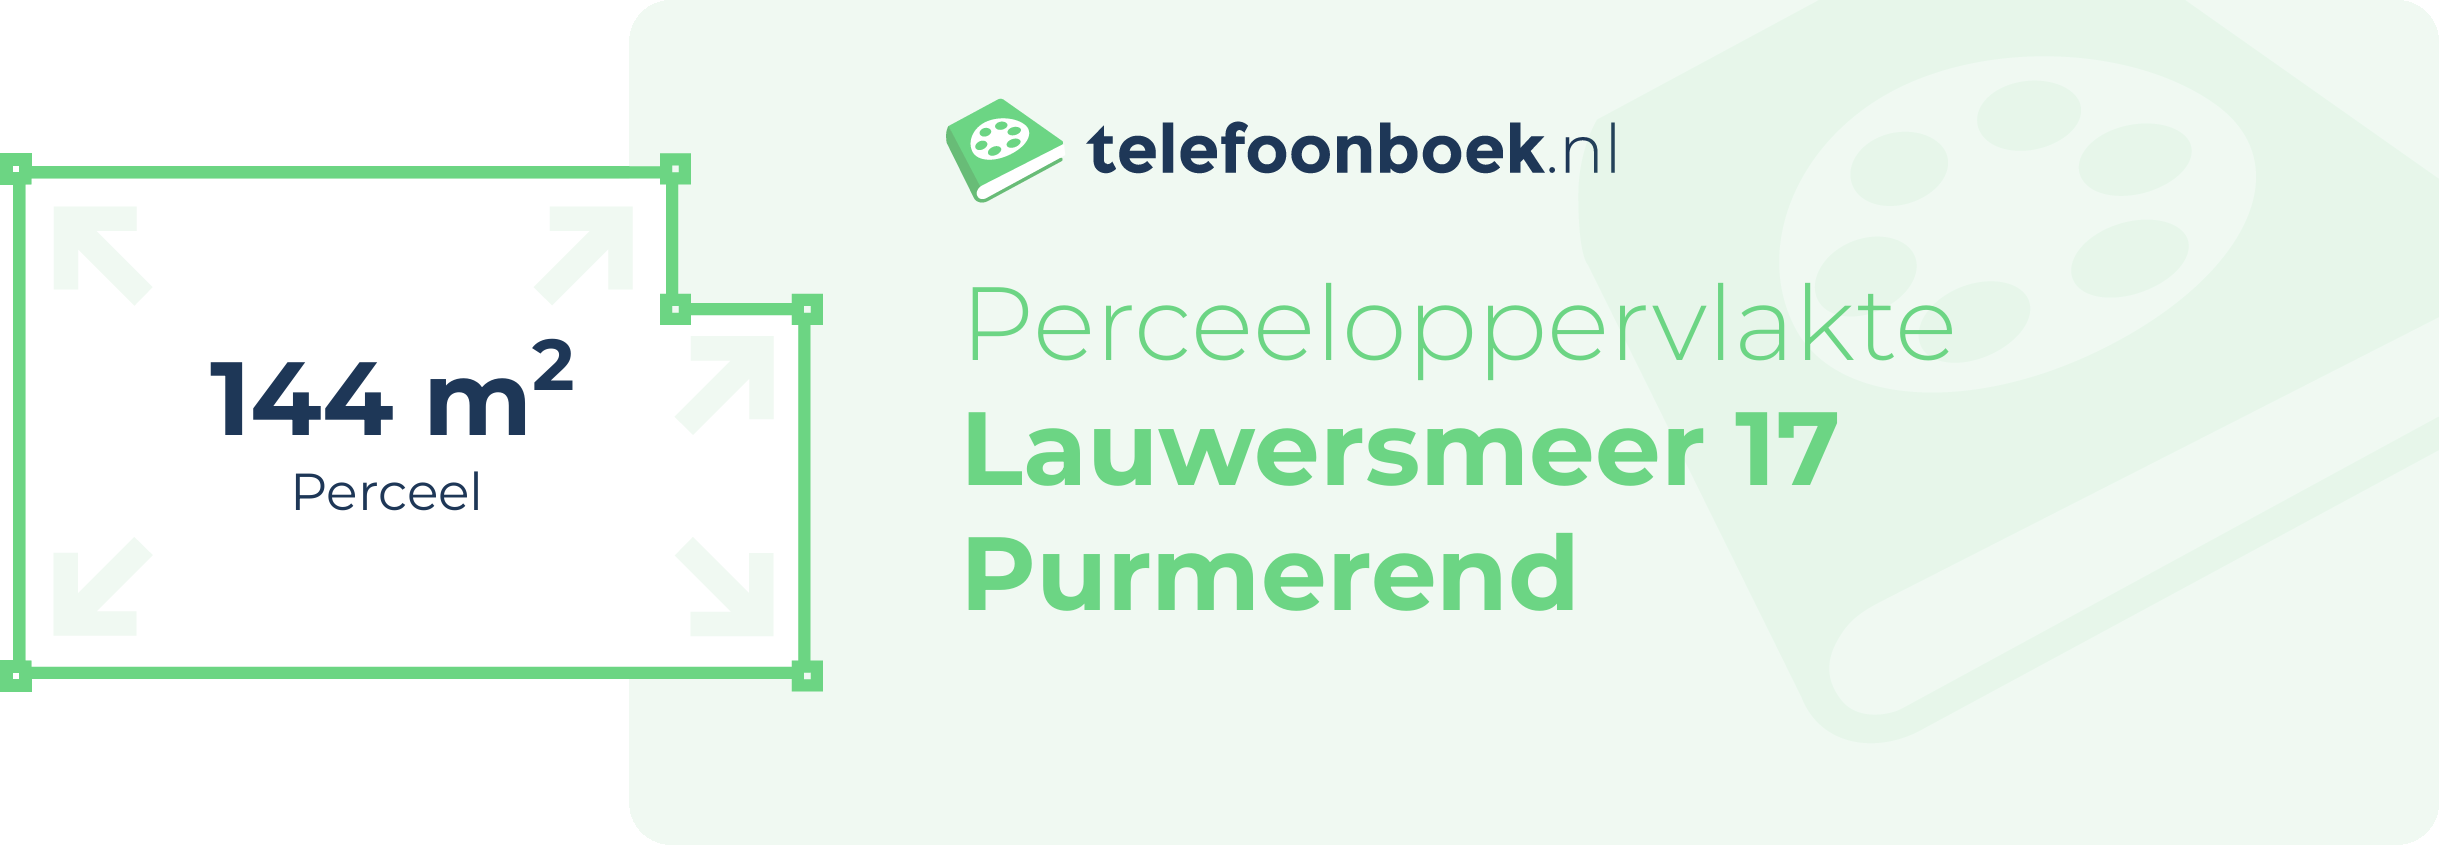 Perceeloppervlakte Lauwersmeer 17 Purmerend